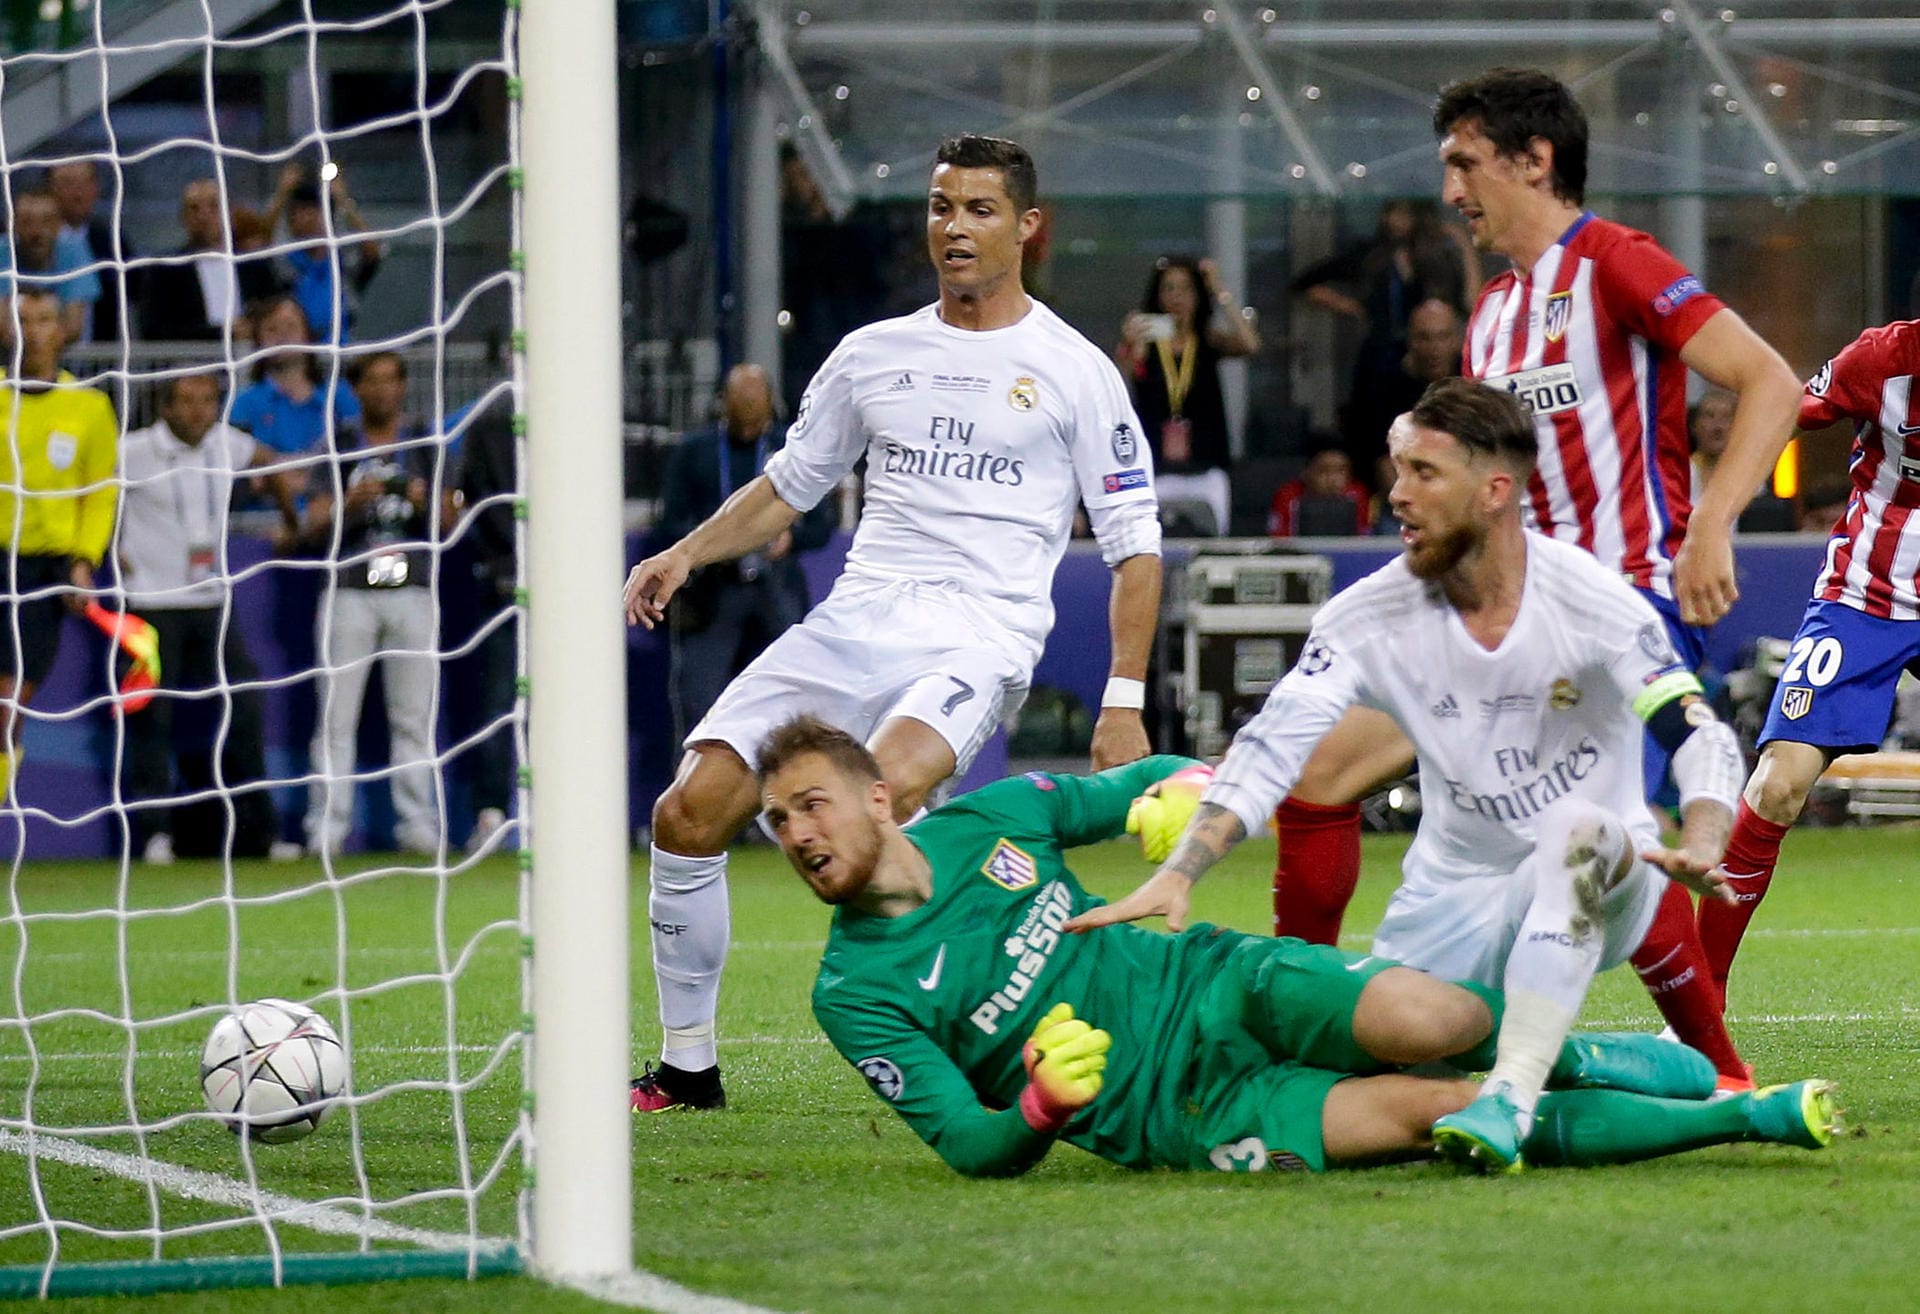 Ramos revanchiert sich. In der 15. Minute verlängert Gareth Bale einen Freistoß von Toni Kroos per Kopf zum knapp im Abseits stehenden Innenverteidiger - und der staubt zum 1:0 ab.